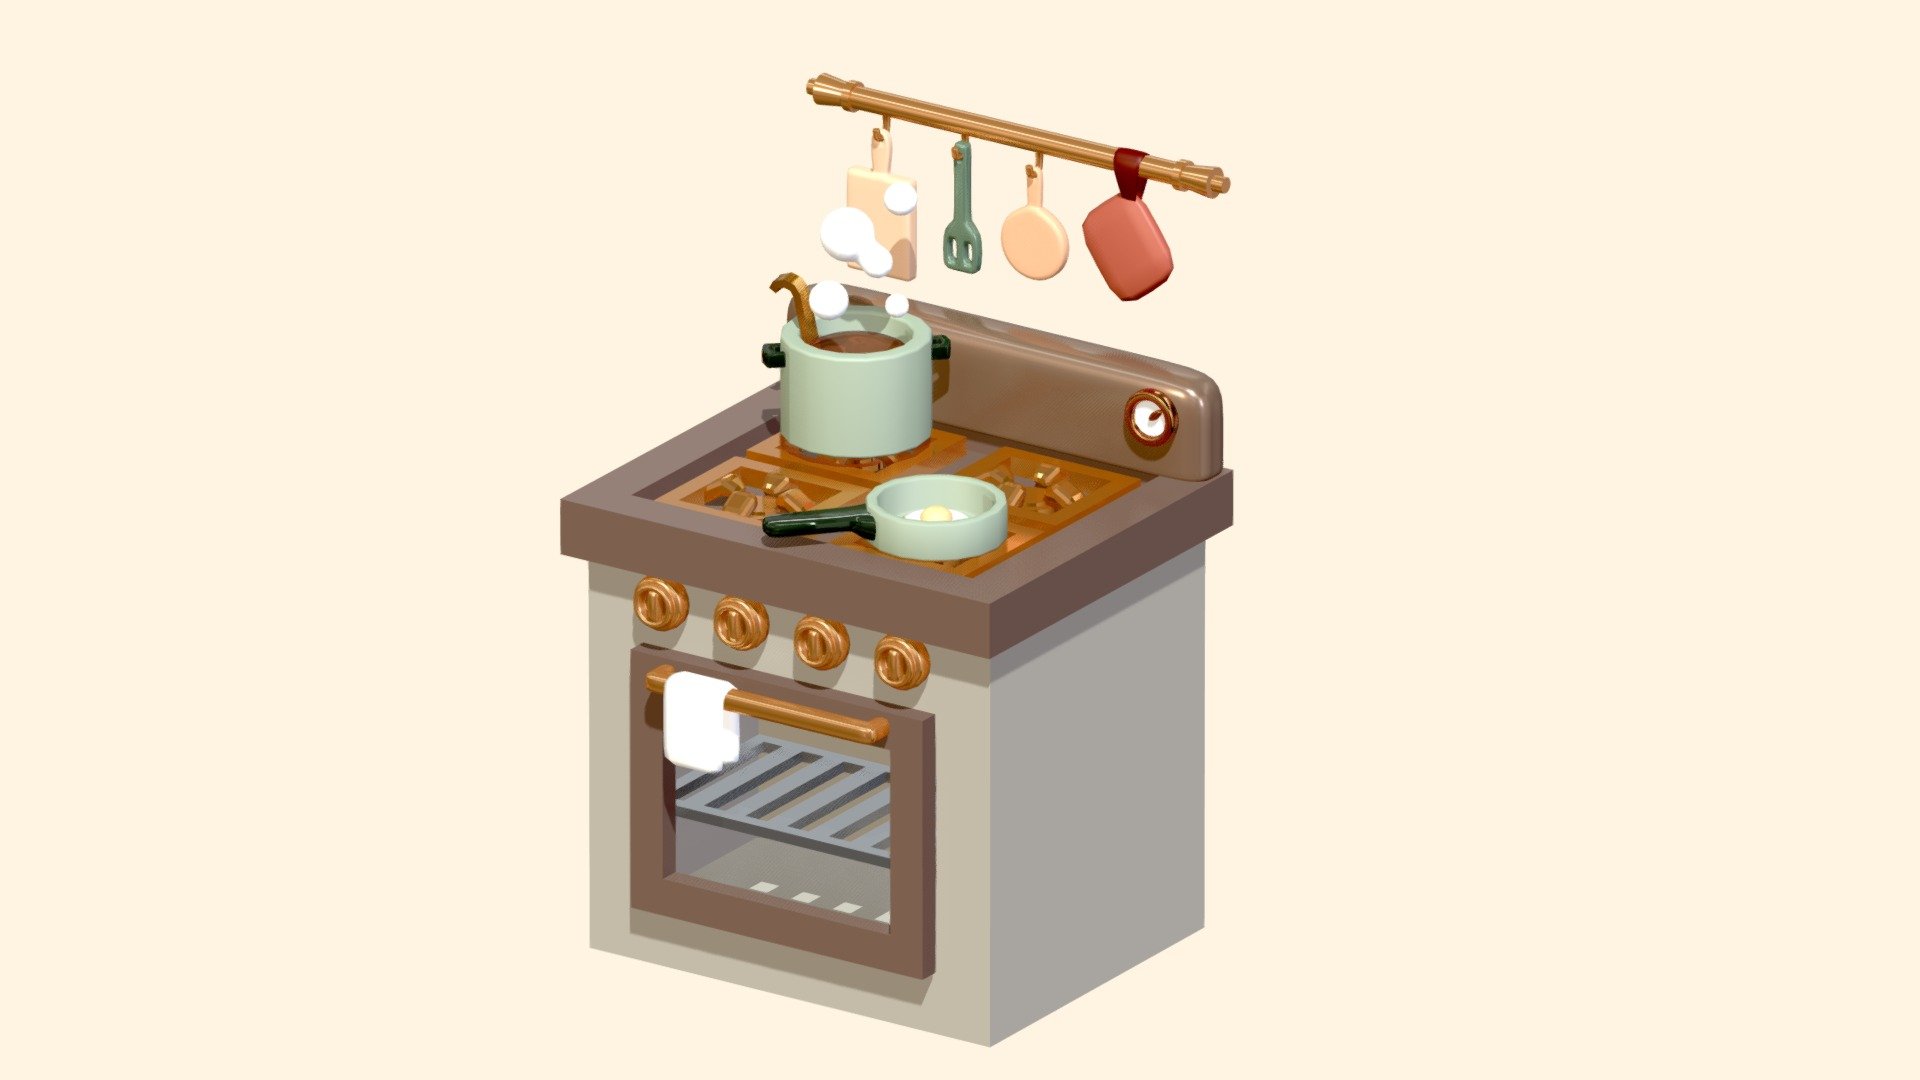 Kitchen area of my farmhouse kitchen model. Hope you like it! - Little Kitchen - 3D model by Nicky Blender (@nickyblender) 3d model